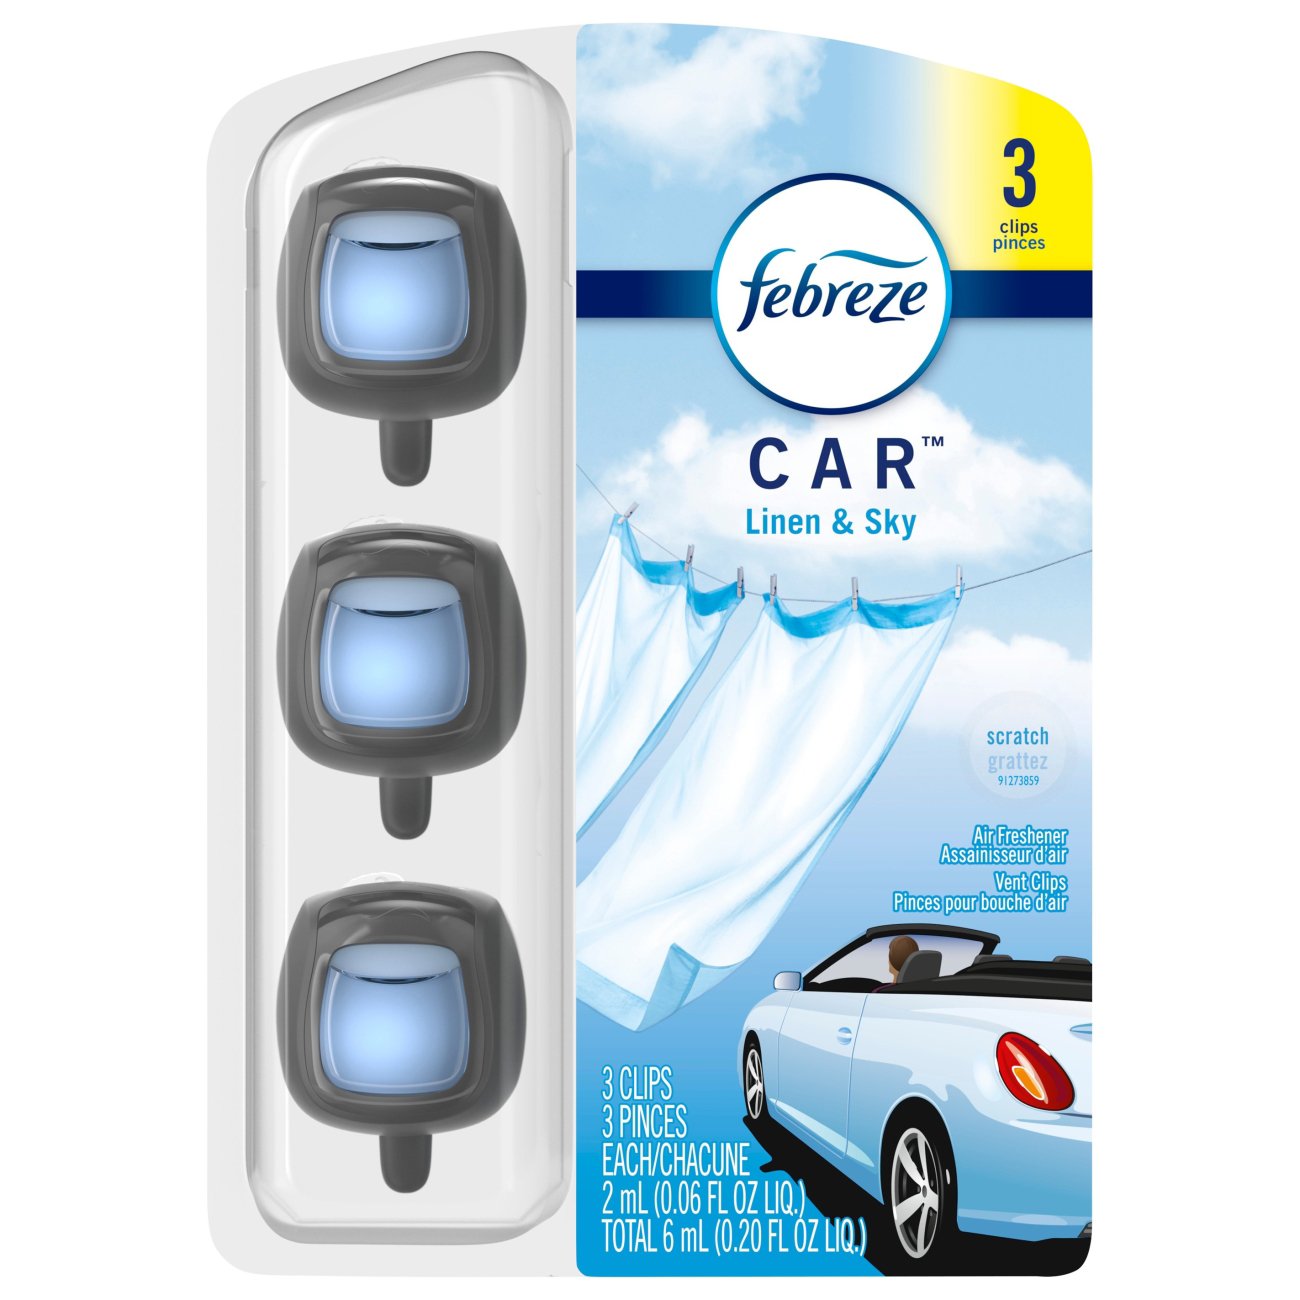 Febreze Car Linen & Sky Air Freshener Vent Clips - Shop Air